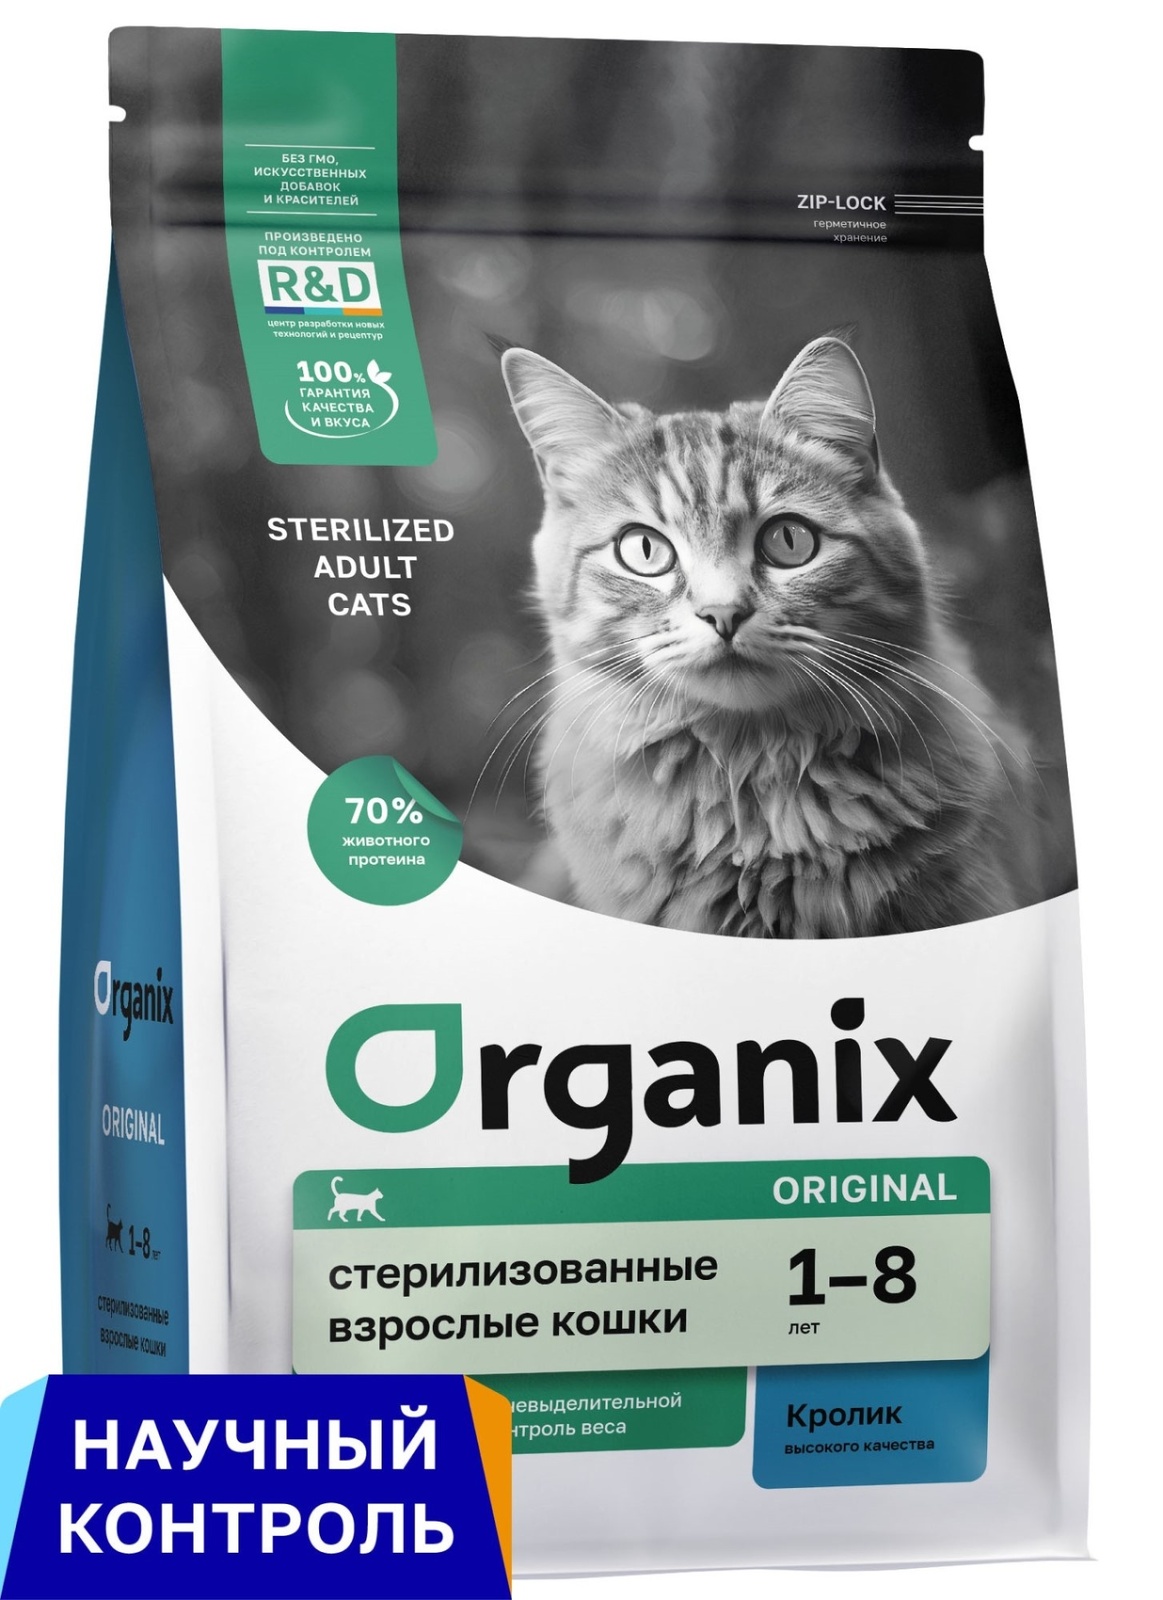 Organix Organix полнорационный сухой корм для стерилизованных кошек с кроликом, фруктами и овощами (5 кг) organix organix сухой корм для кошек с курочкой 7 5 кг